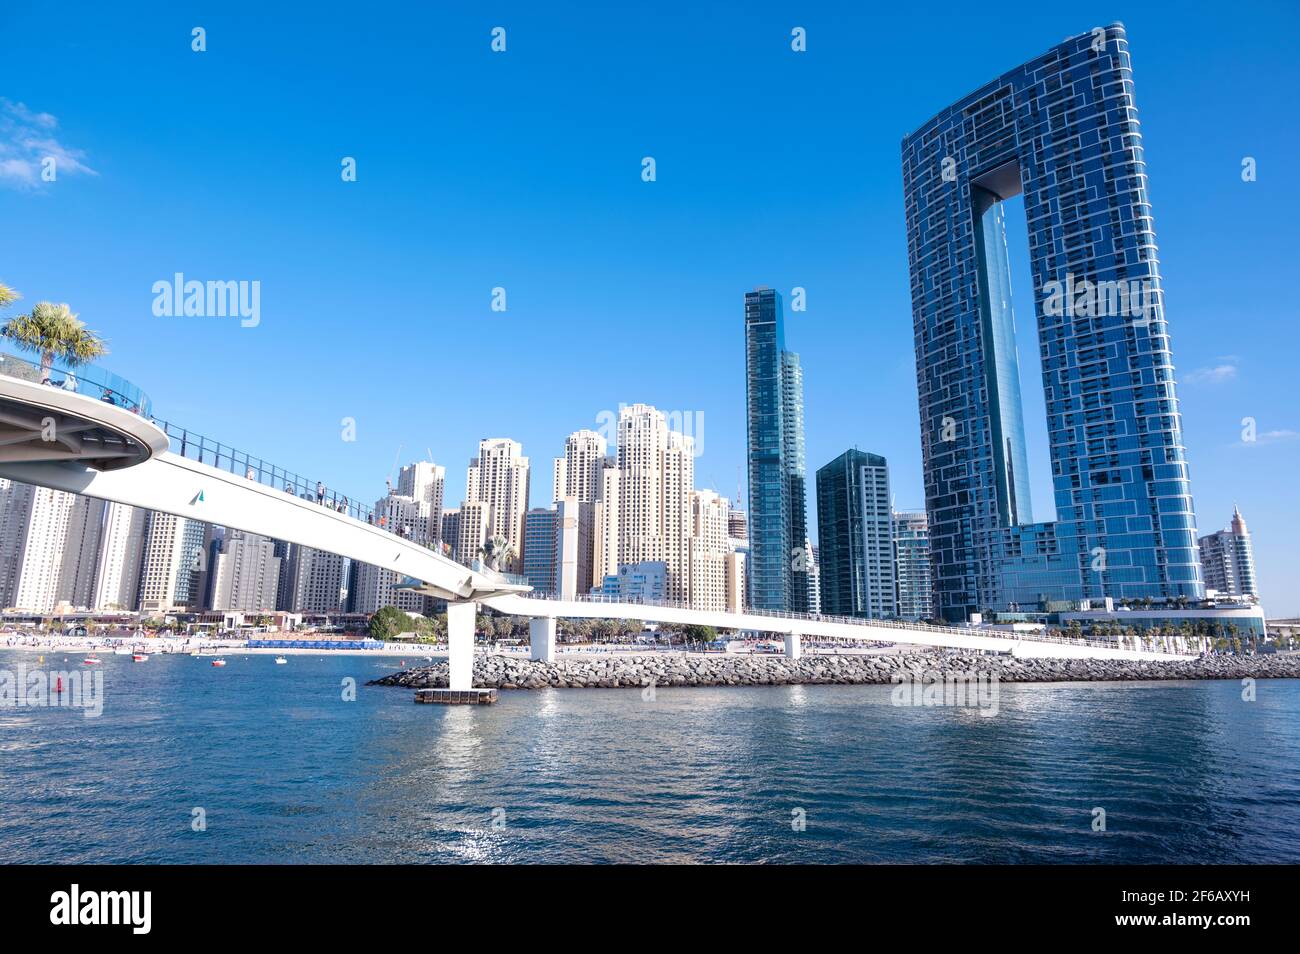 Belle vue sur les résidences d'eau bleue et les gratte-ciels et le pont du quai capturé à partir de l'Ain Dubai, les îles d'eau bleue, Dubaï, Émirats Arabes Unis. Banque D'Images